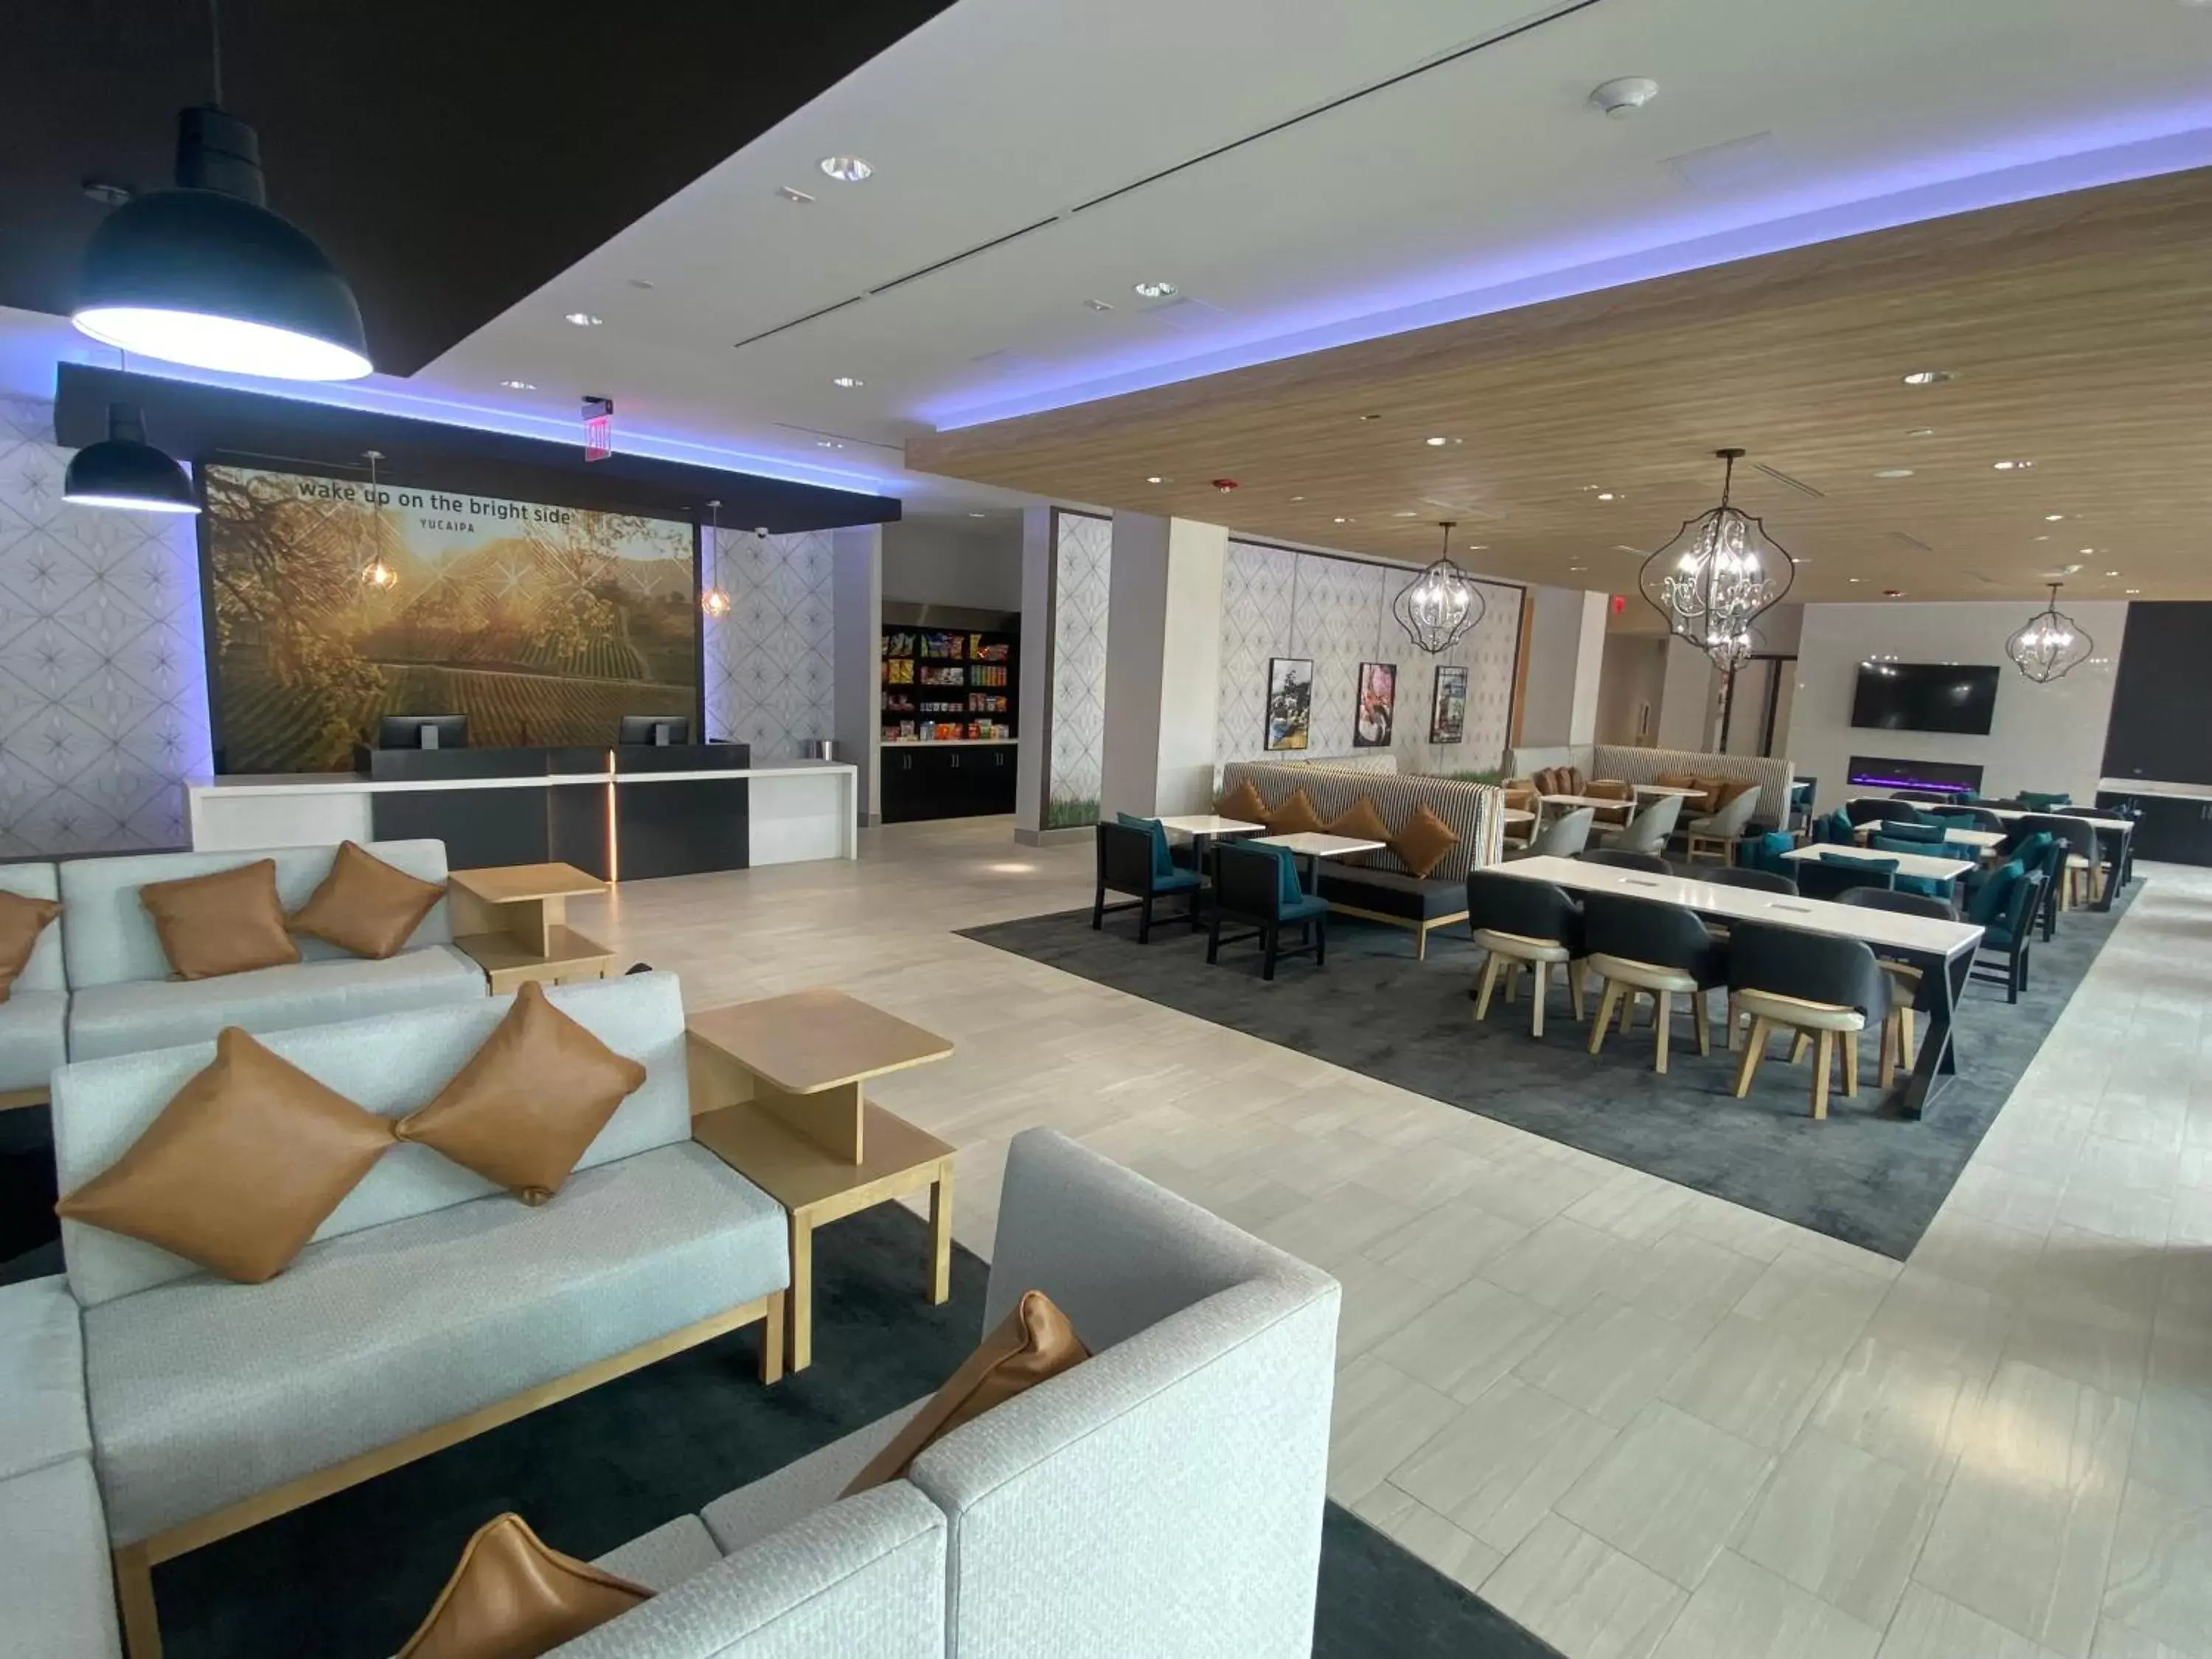 Lobby or reception in La Quinta Inn & Suites by Wyndham Yucaipa